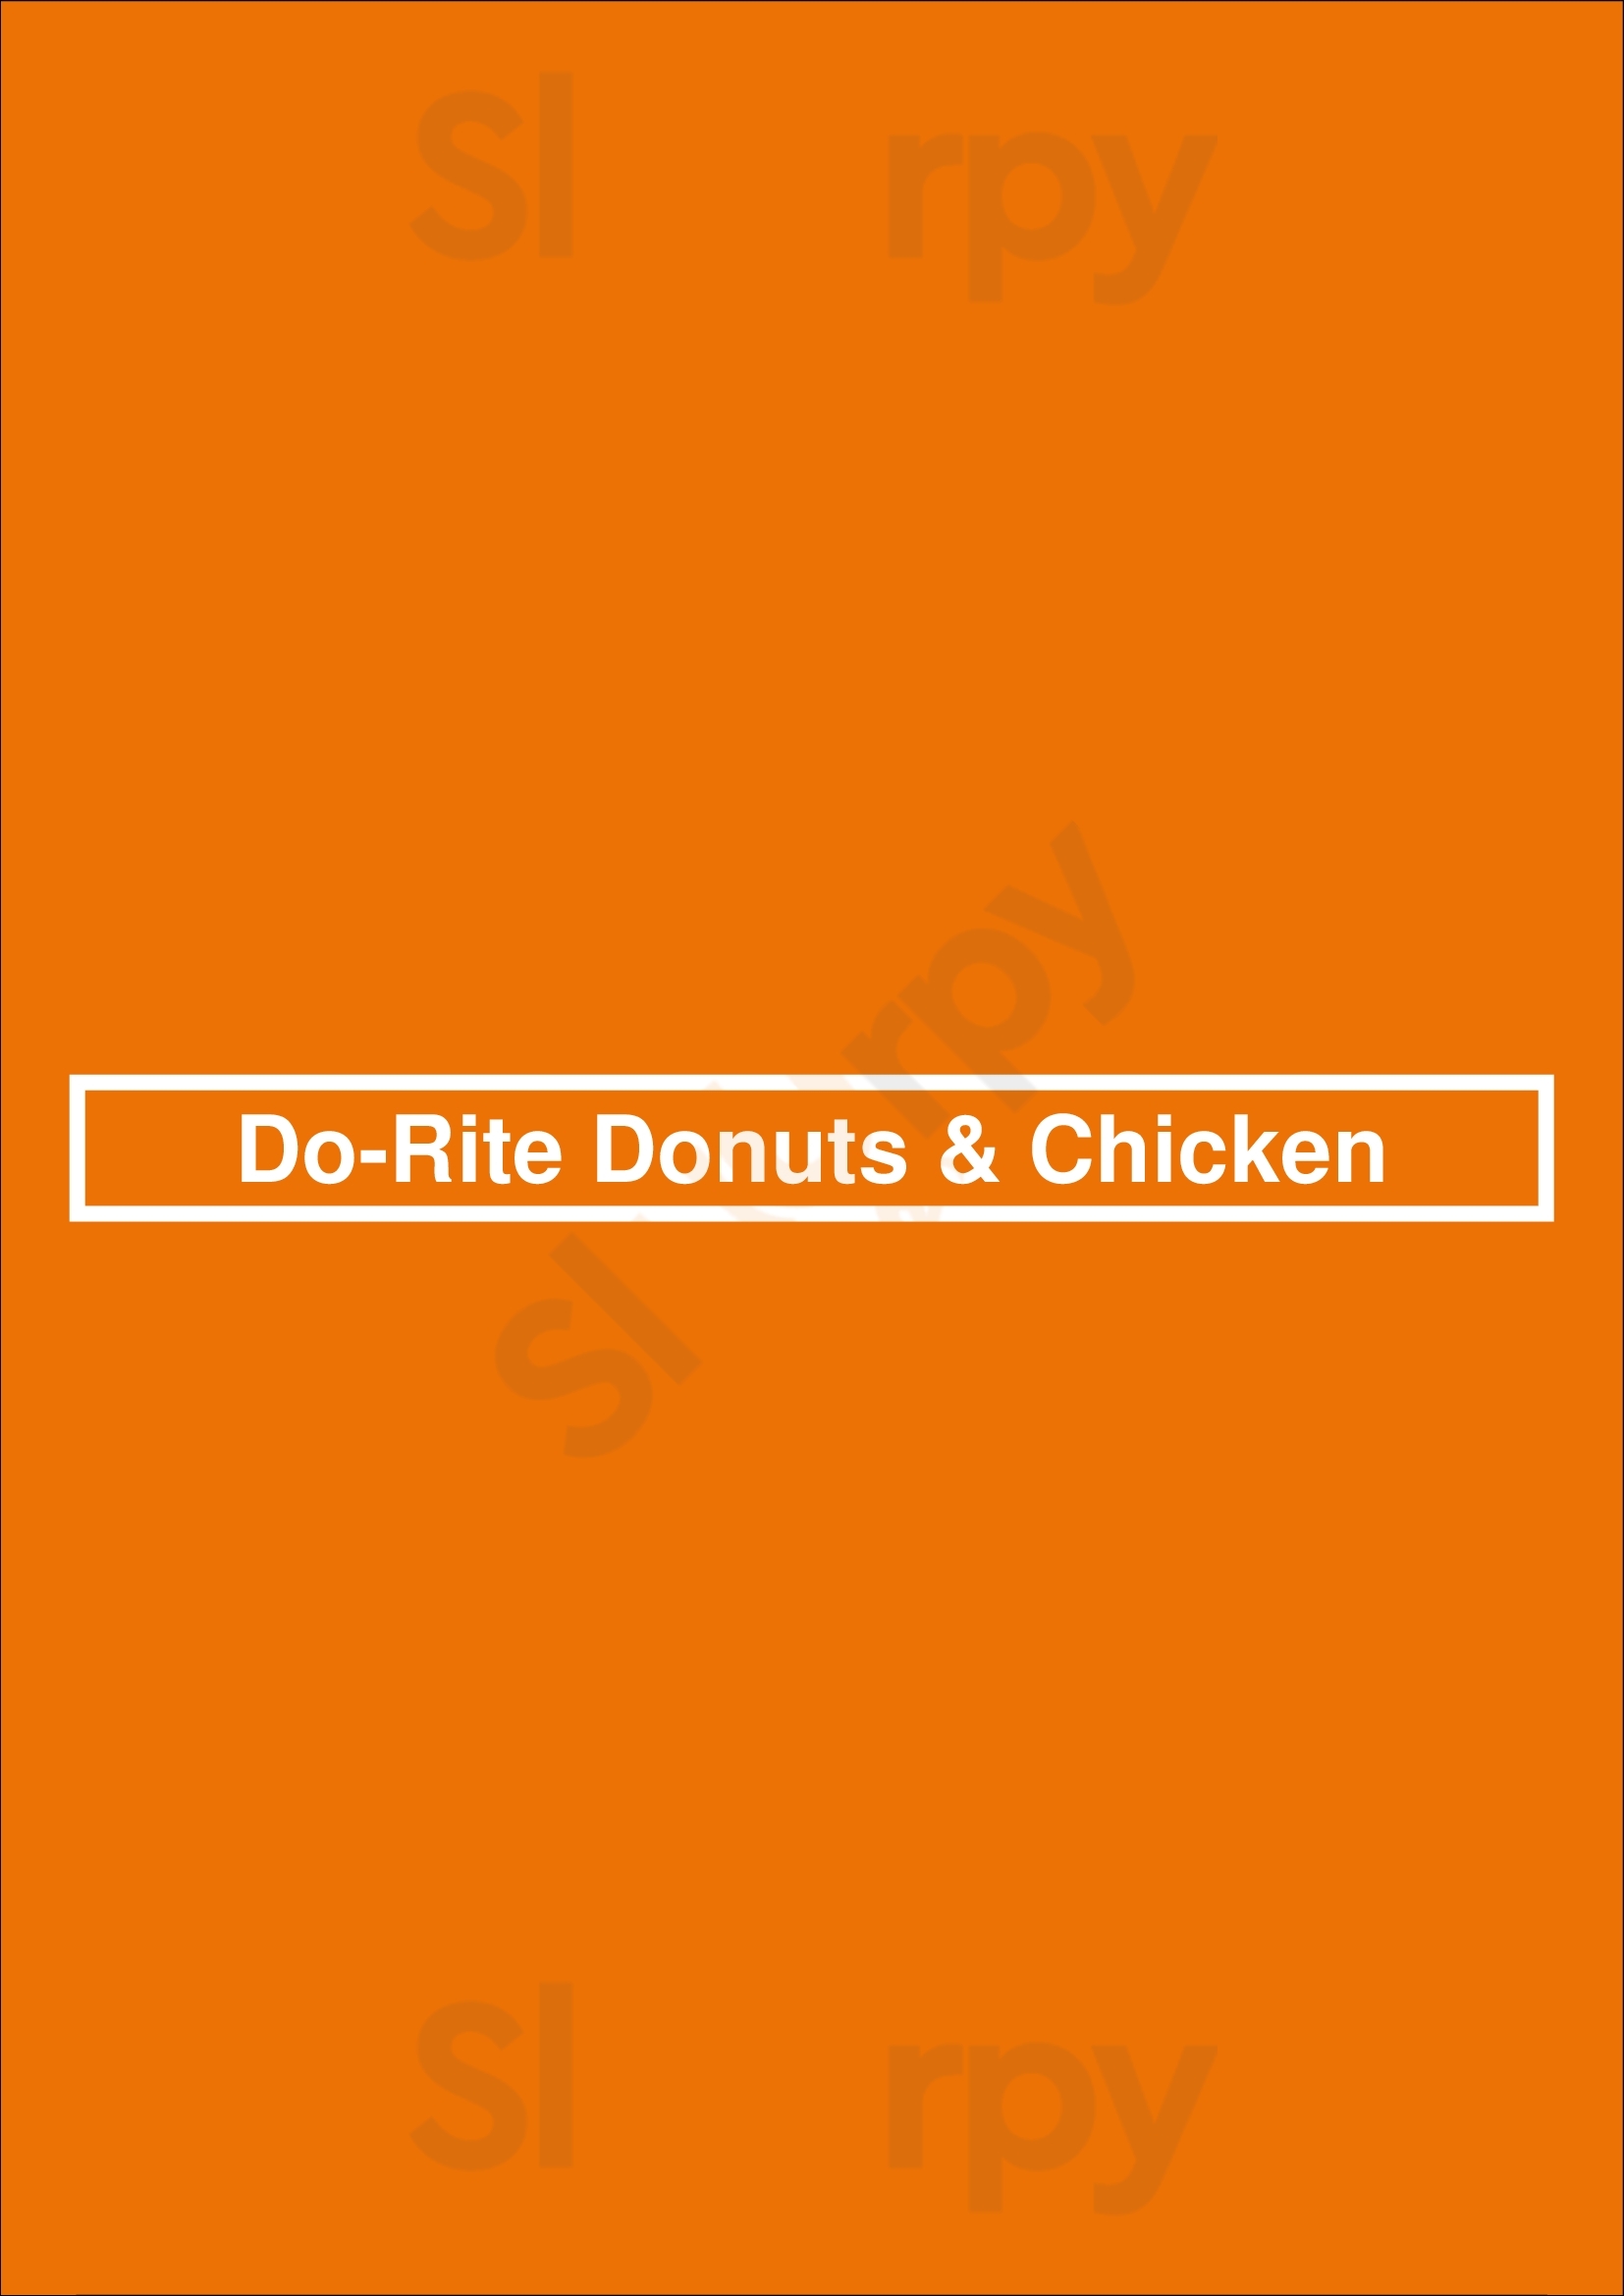 Do-rite Donuts & Chicken - Streeterville Chicago Menu - 1